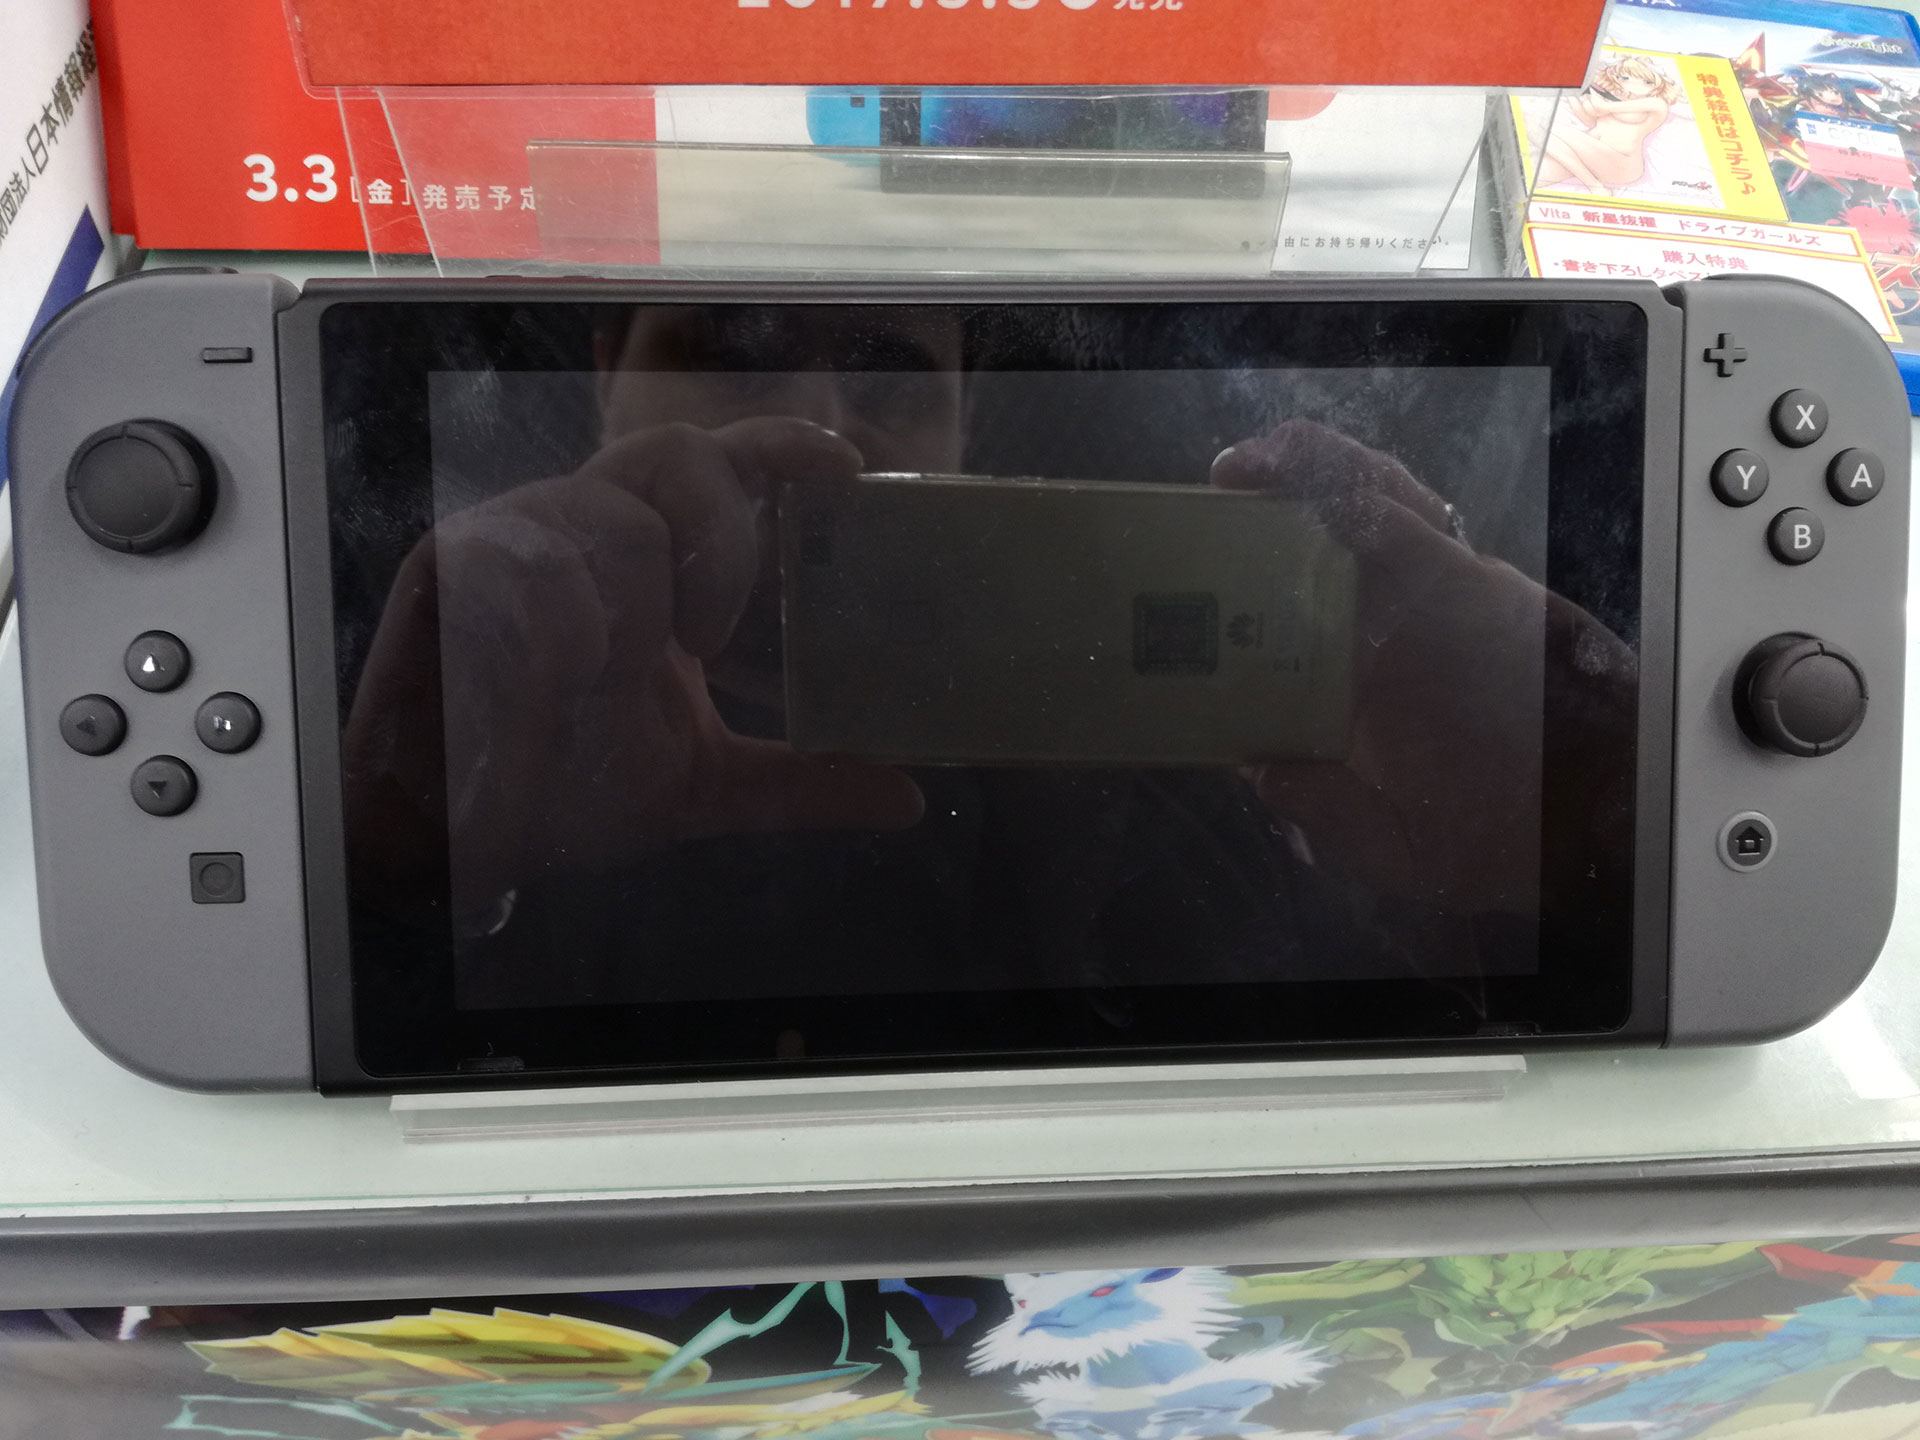 Nintendo Switch, nuove foto ravvicinate ci mostrano i dettagli della console